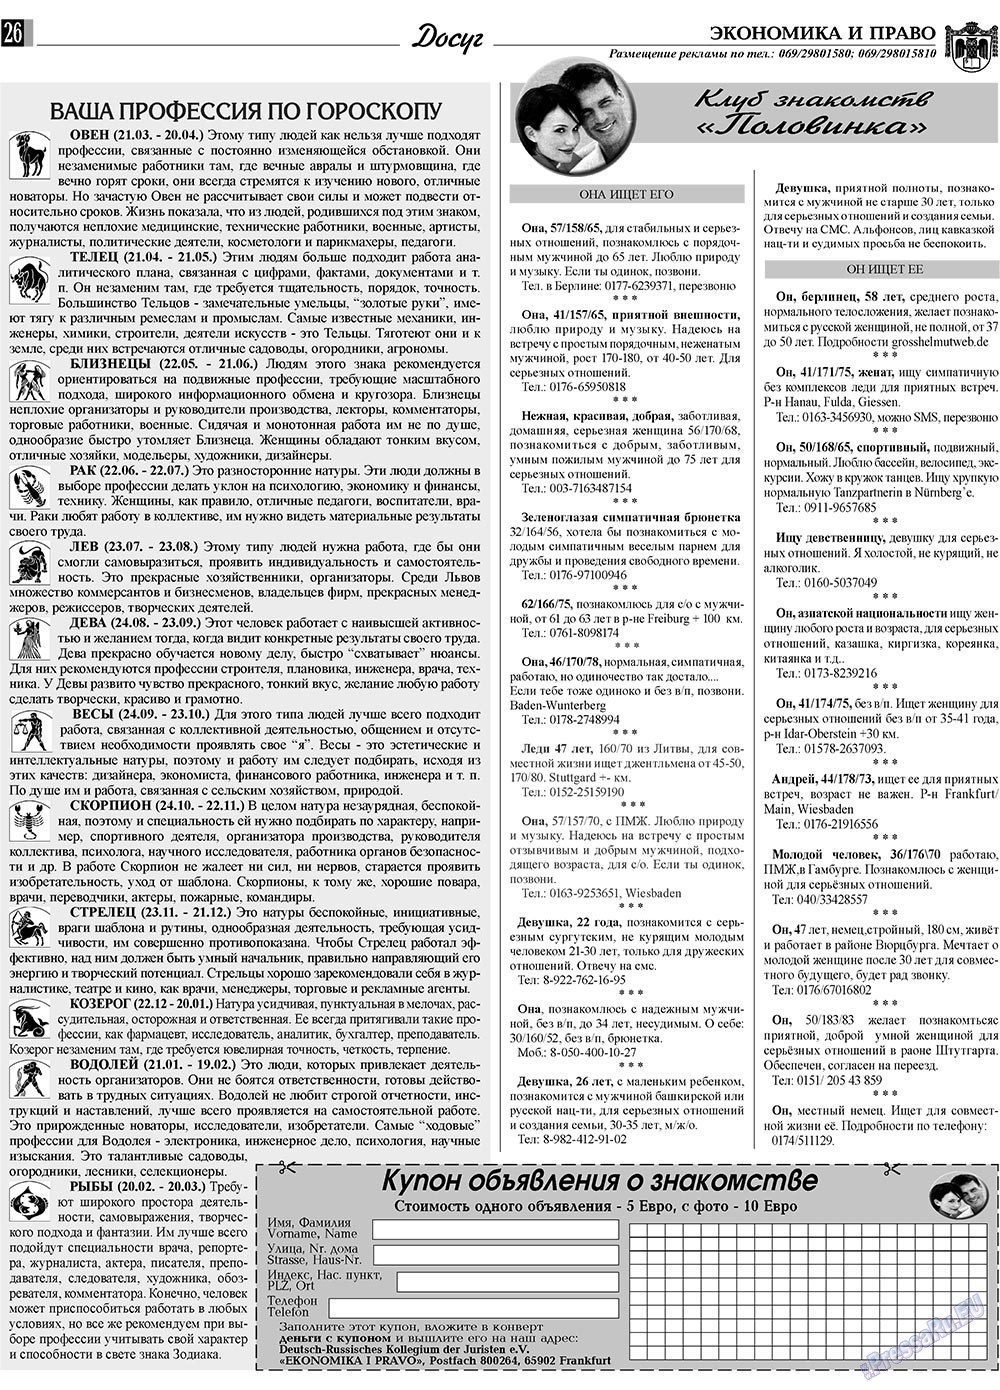 Экономика и право, газета. 2010 №1 стр.26